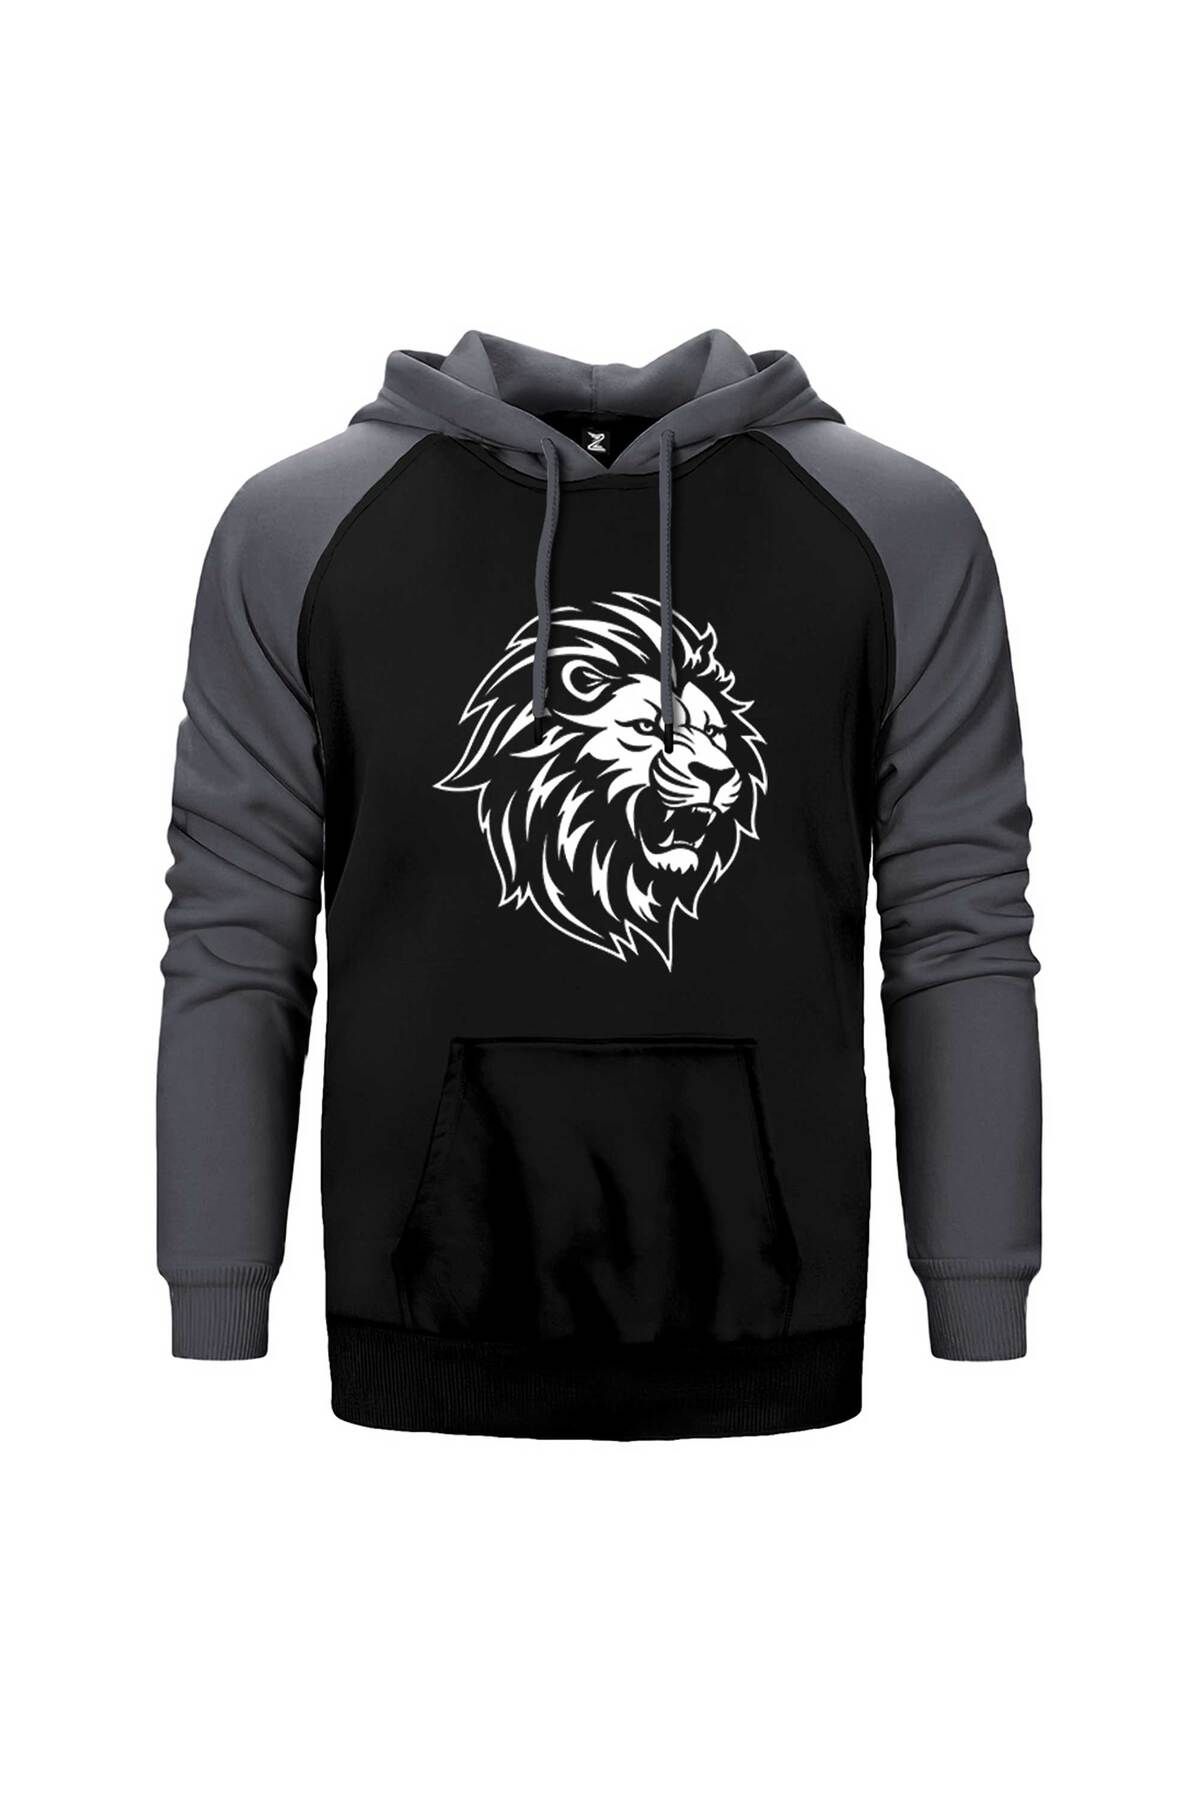 Z zepplin Black and White Lion Gri Renk Reglan Kol Kapşonlu Sweatshirt